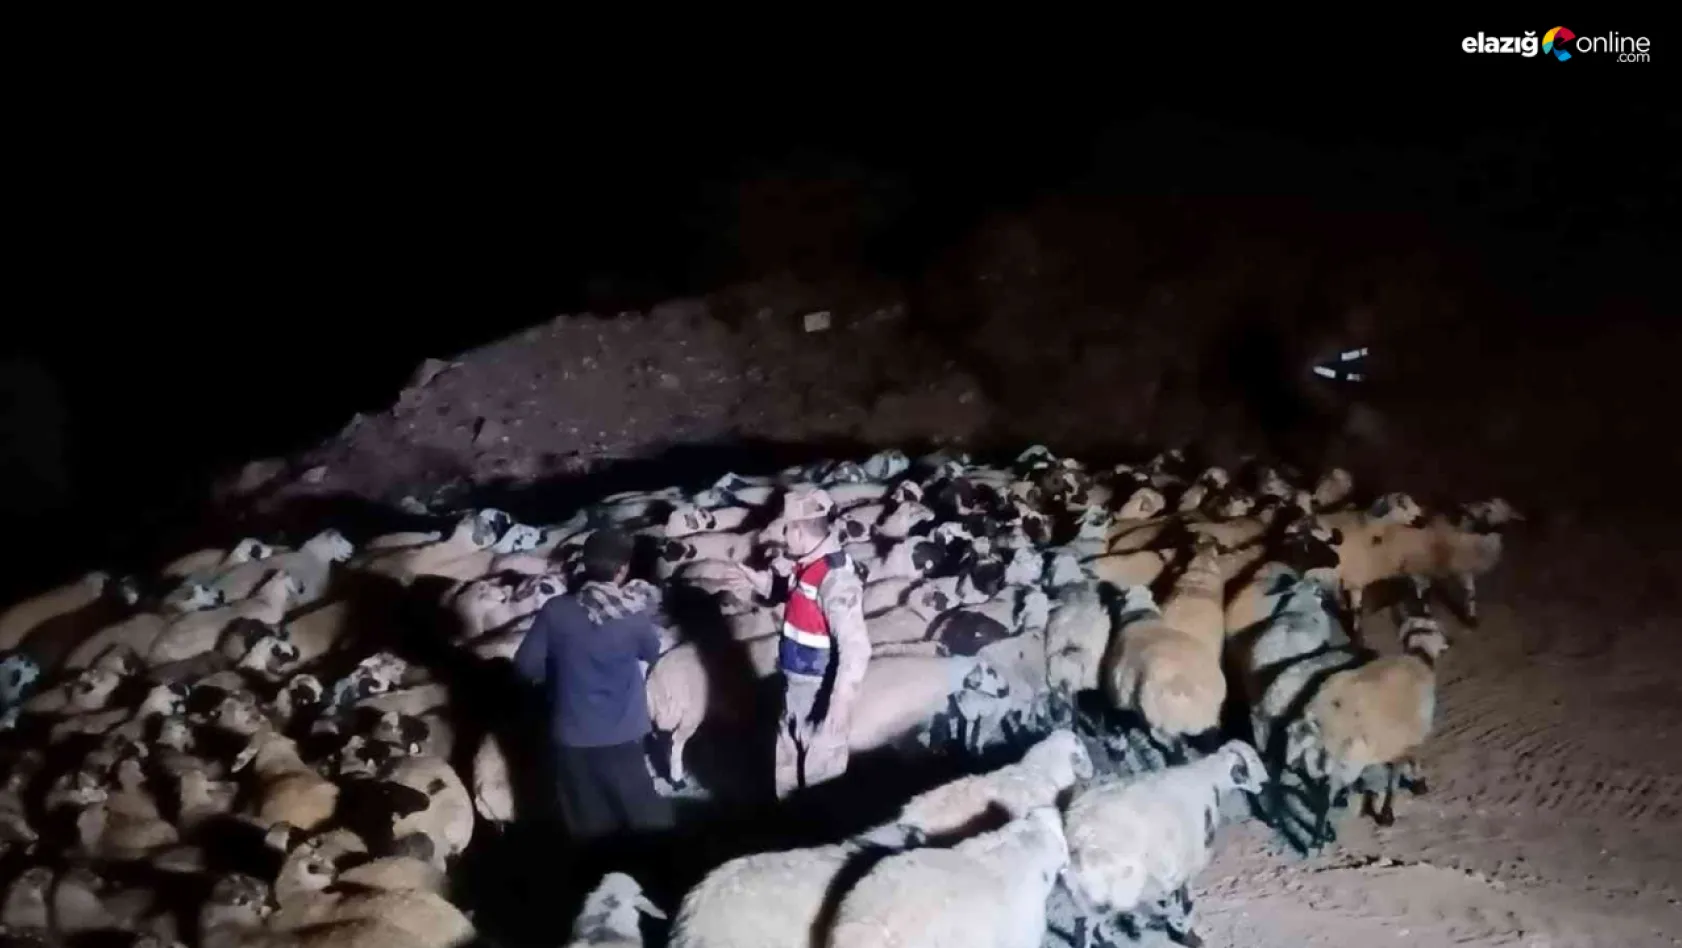 Elazığ'da jandarma kaybolan hayvanları dron ile buldu